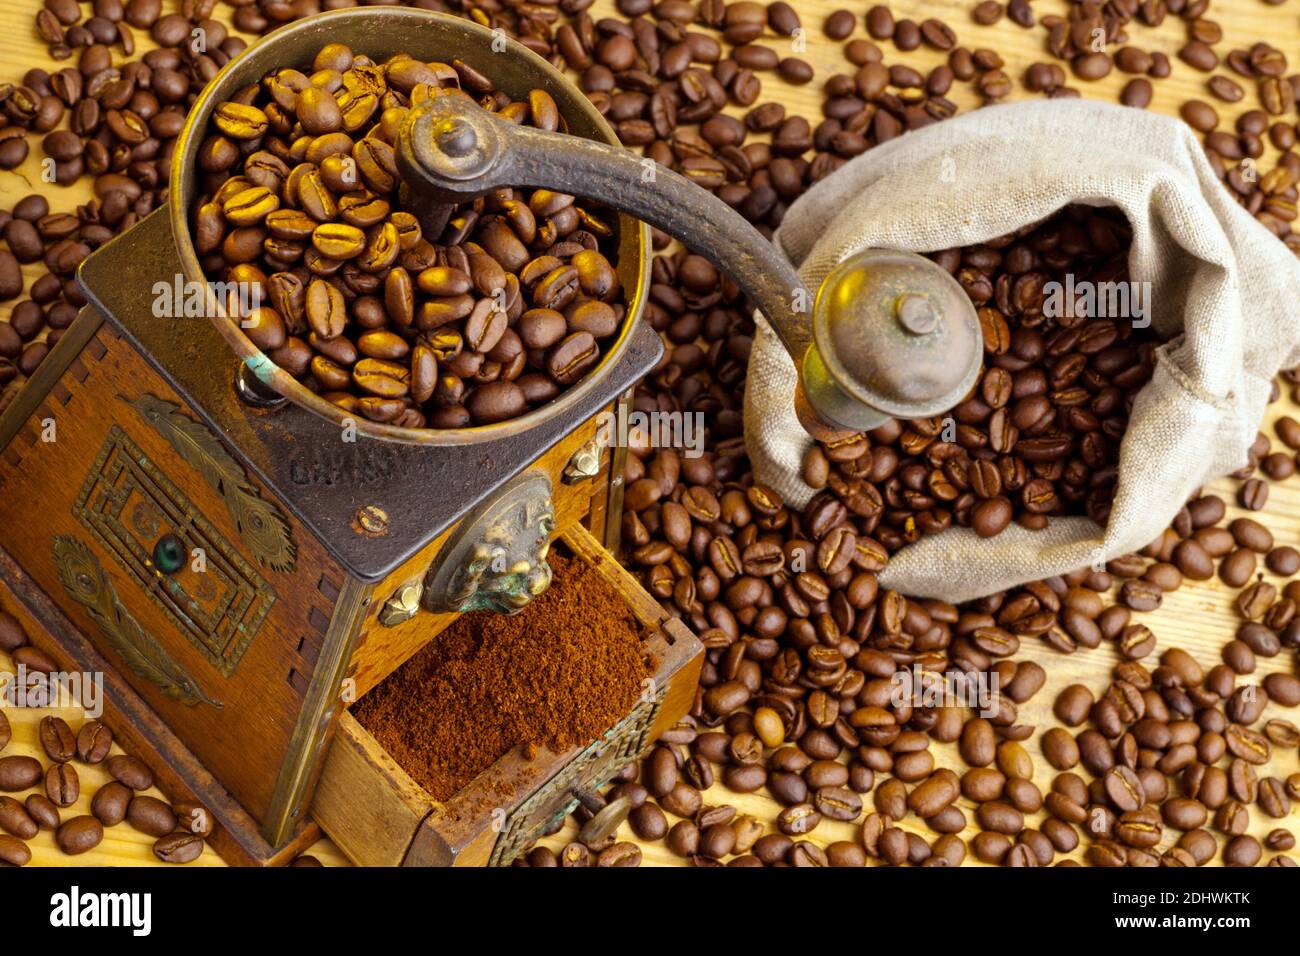 Kaffeebohnen liegen neben einer Kaffeemühle. Frisch gemahlener Kaffee. Stock Photo